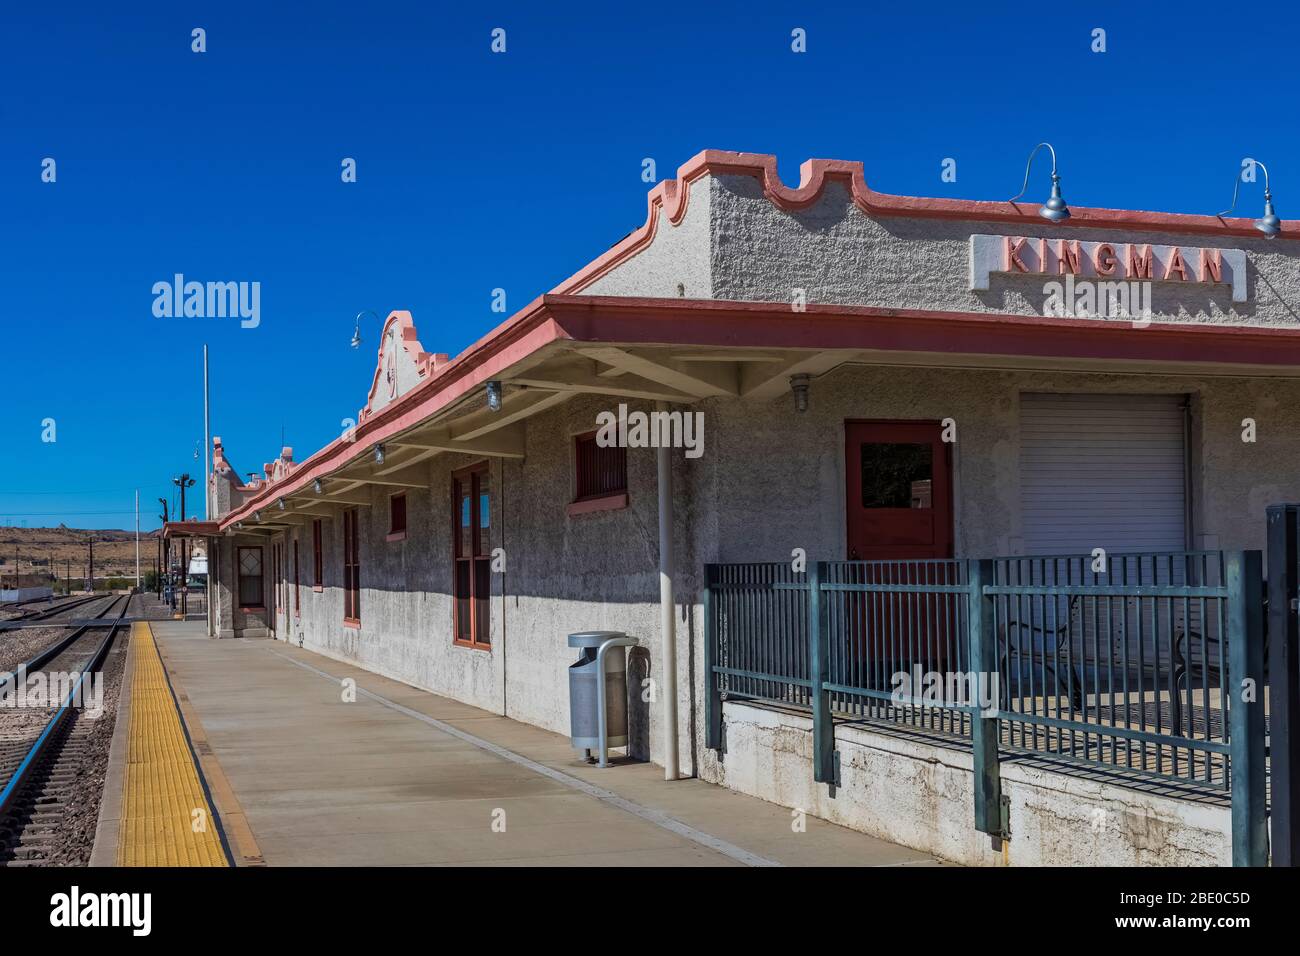 Kingman Railroad Depot, construit à l'origine en 1907 par les chemins de fer Atchison, Topeka et Santa Fe à Kingston le long de la route historique 66 en Arizona, aux États-Unis Banque D'Images